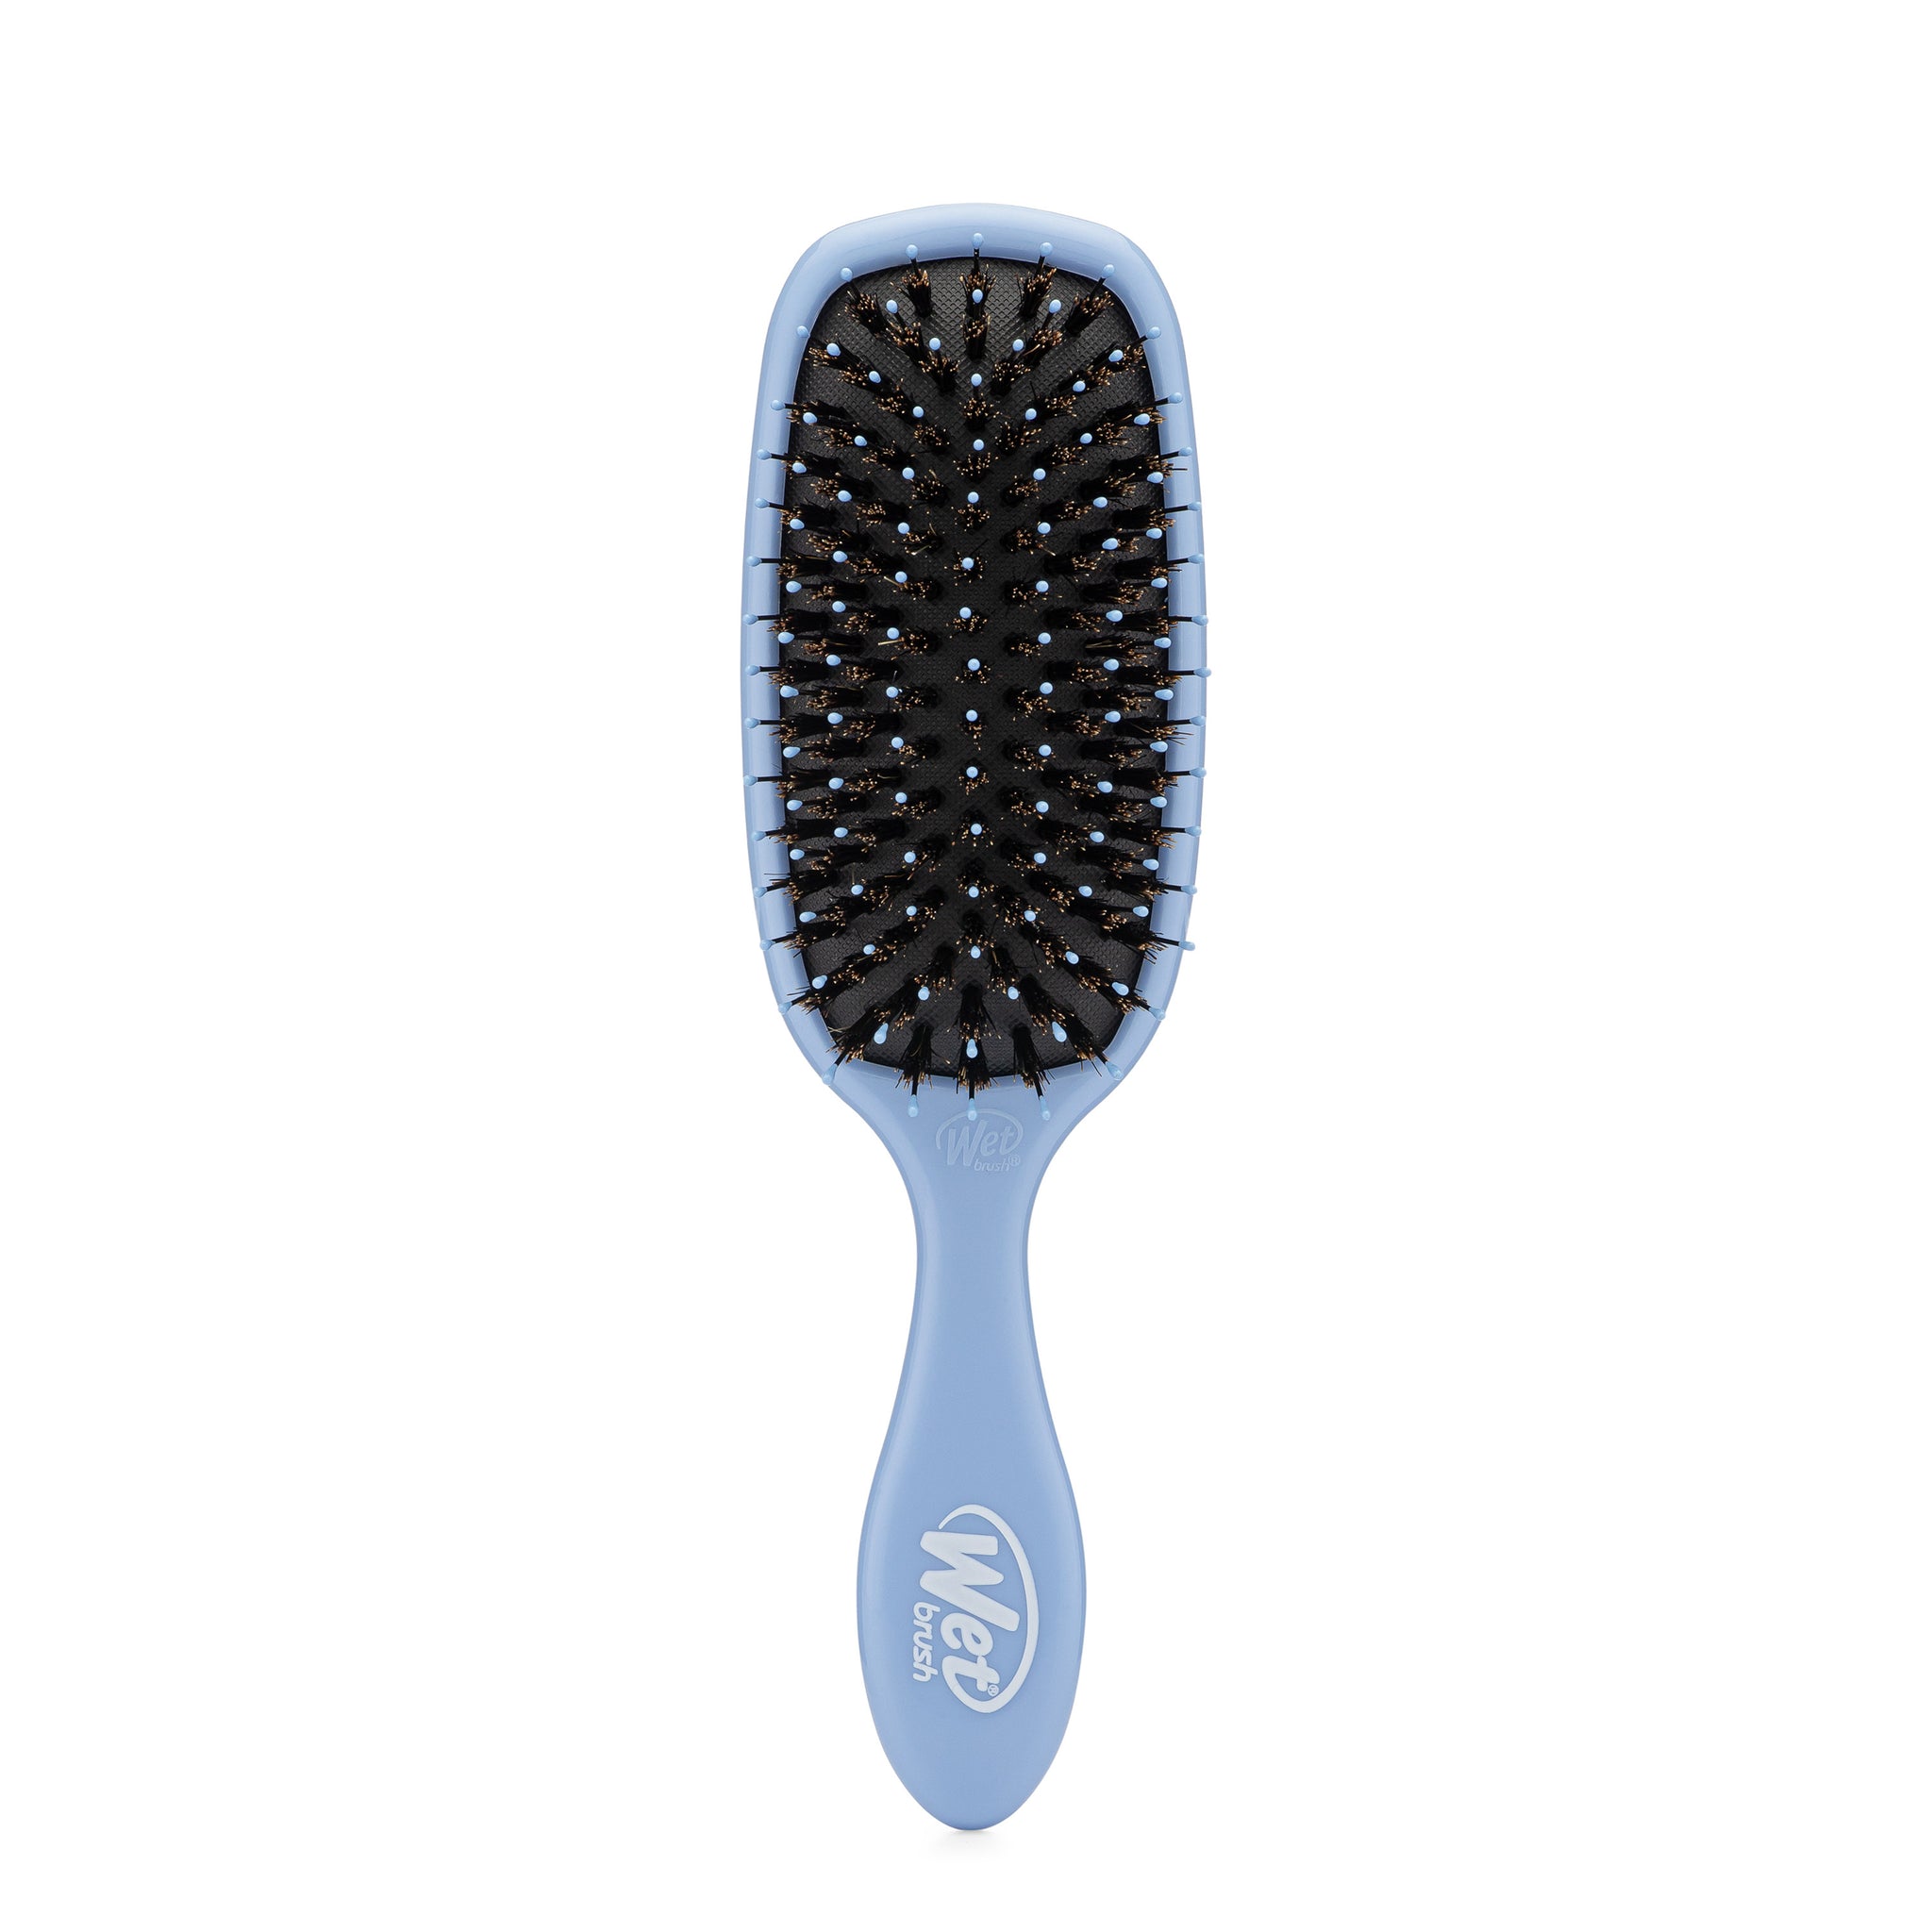 Wet Brush Pro Thin Hair Brush